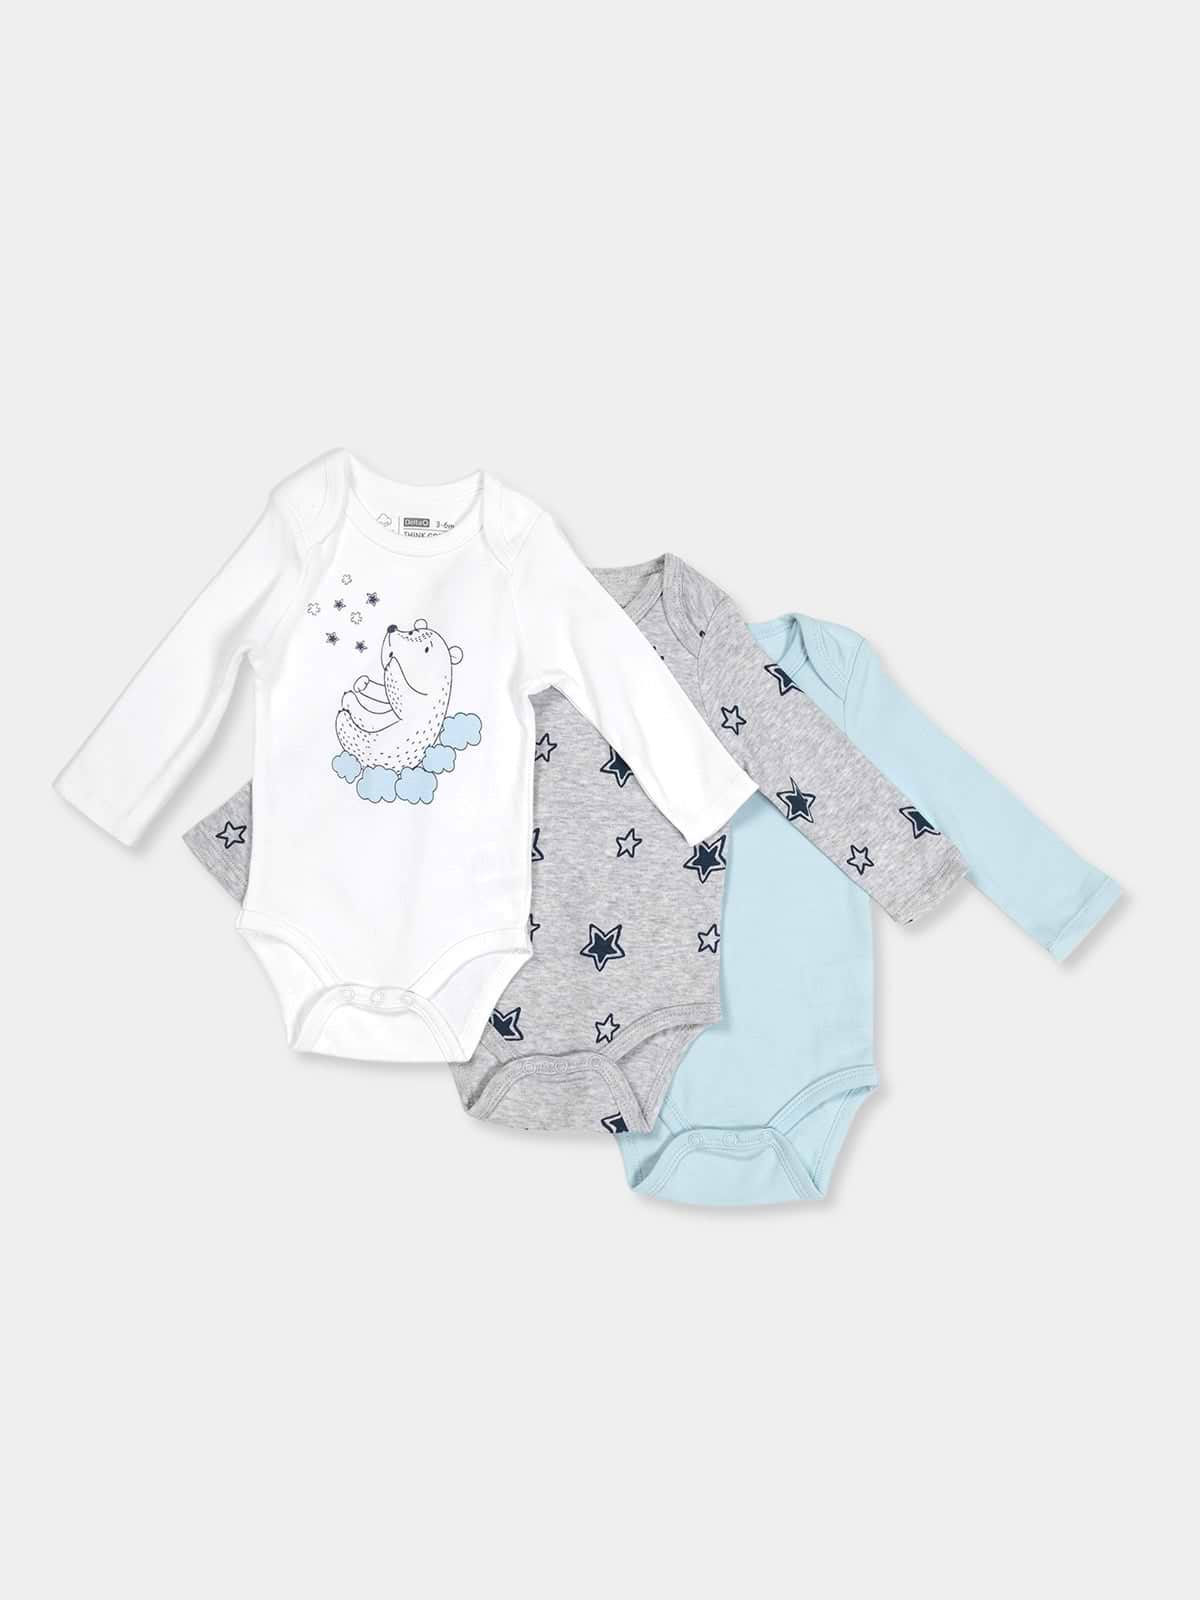 3 בגדי גוף ארוכים במארז STAR BABY / תינוקות